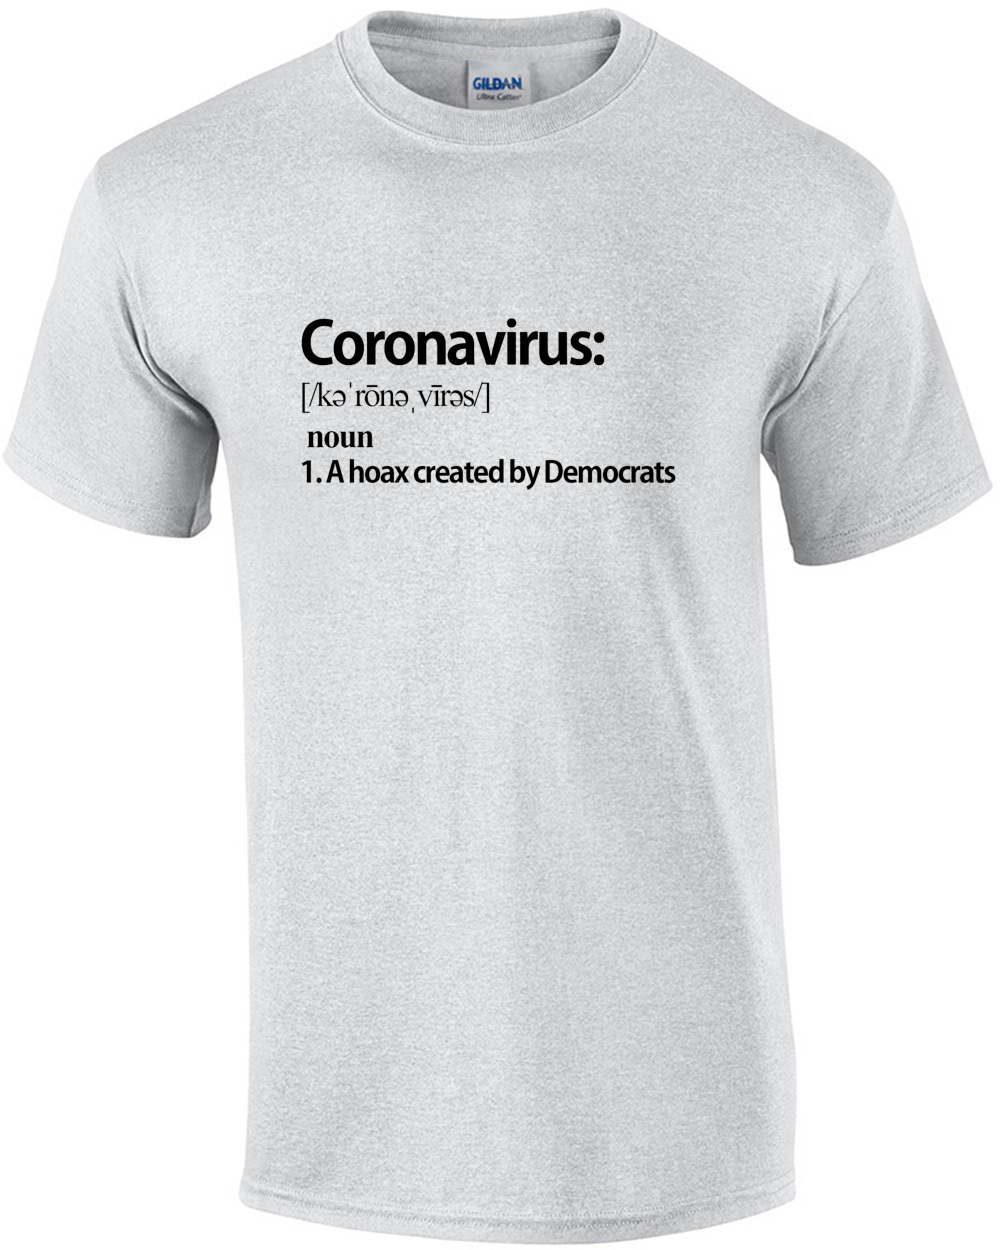 coronavirus--noun--a-hoax-created-by-dem